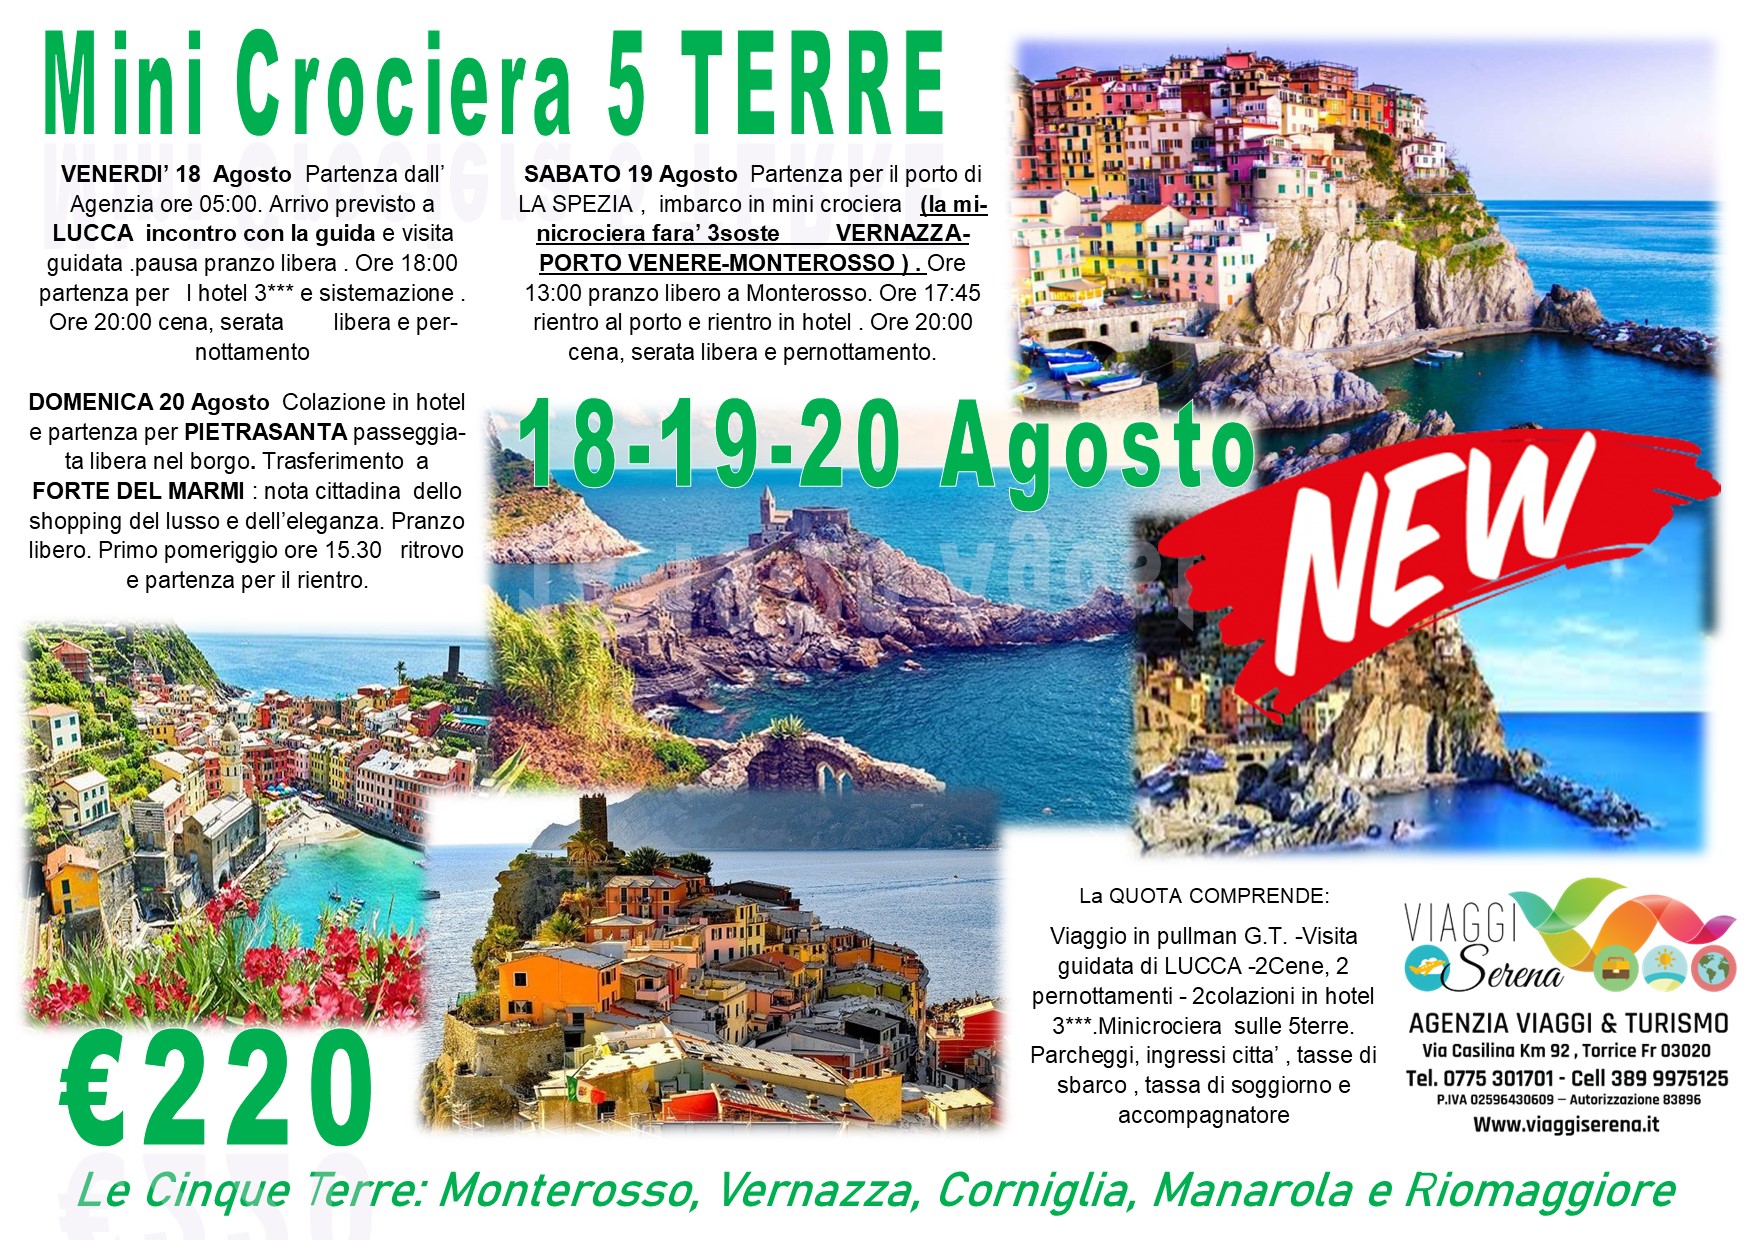 Viaggi di gruppo: “NEW” Pisa & Lucca “Minicrociera 5 Terre” 18-19-20 Agosto €220,00